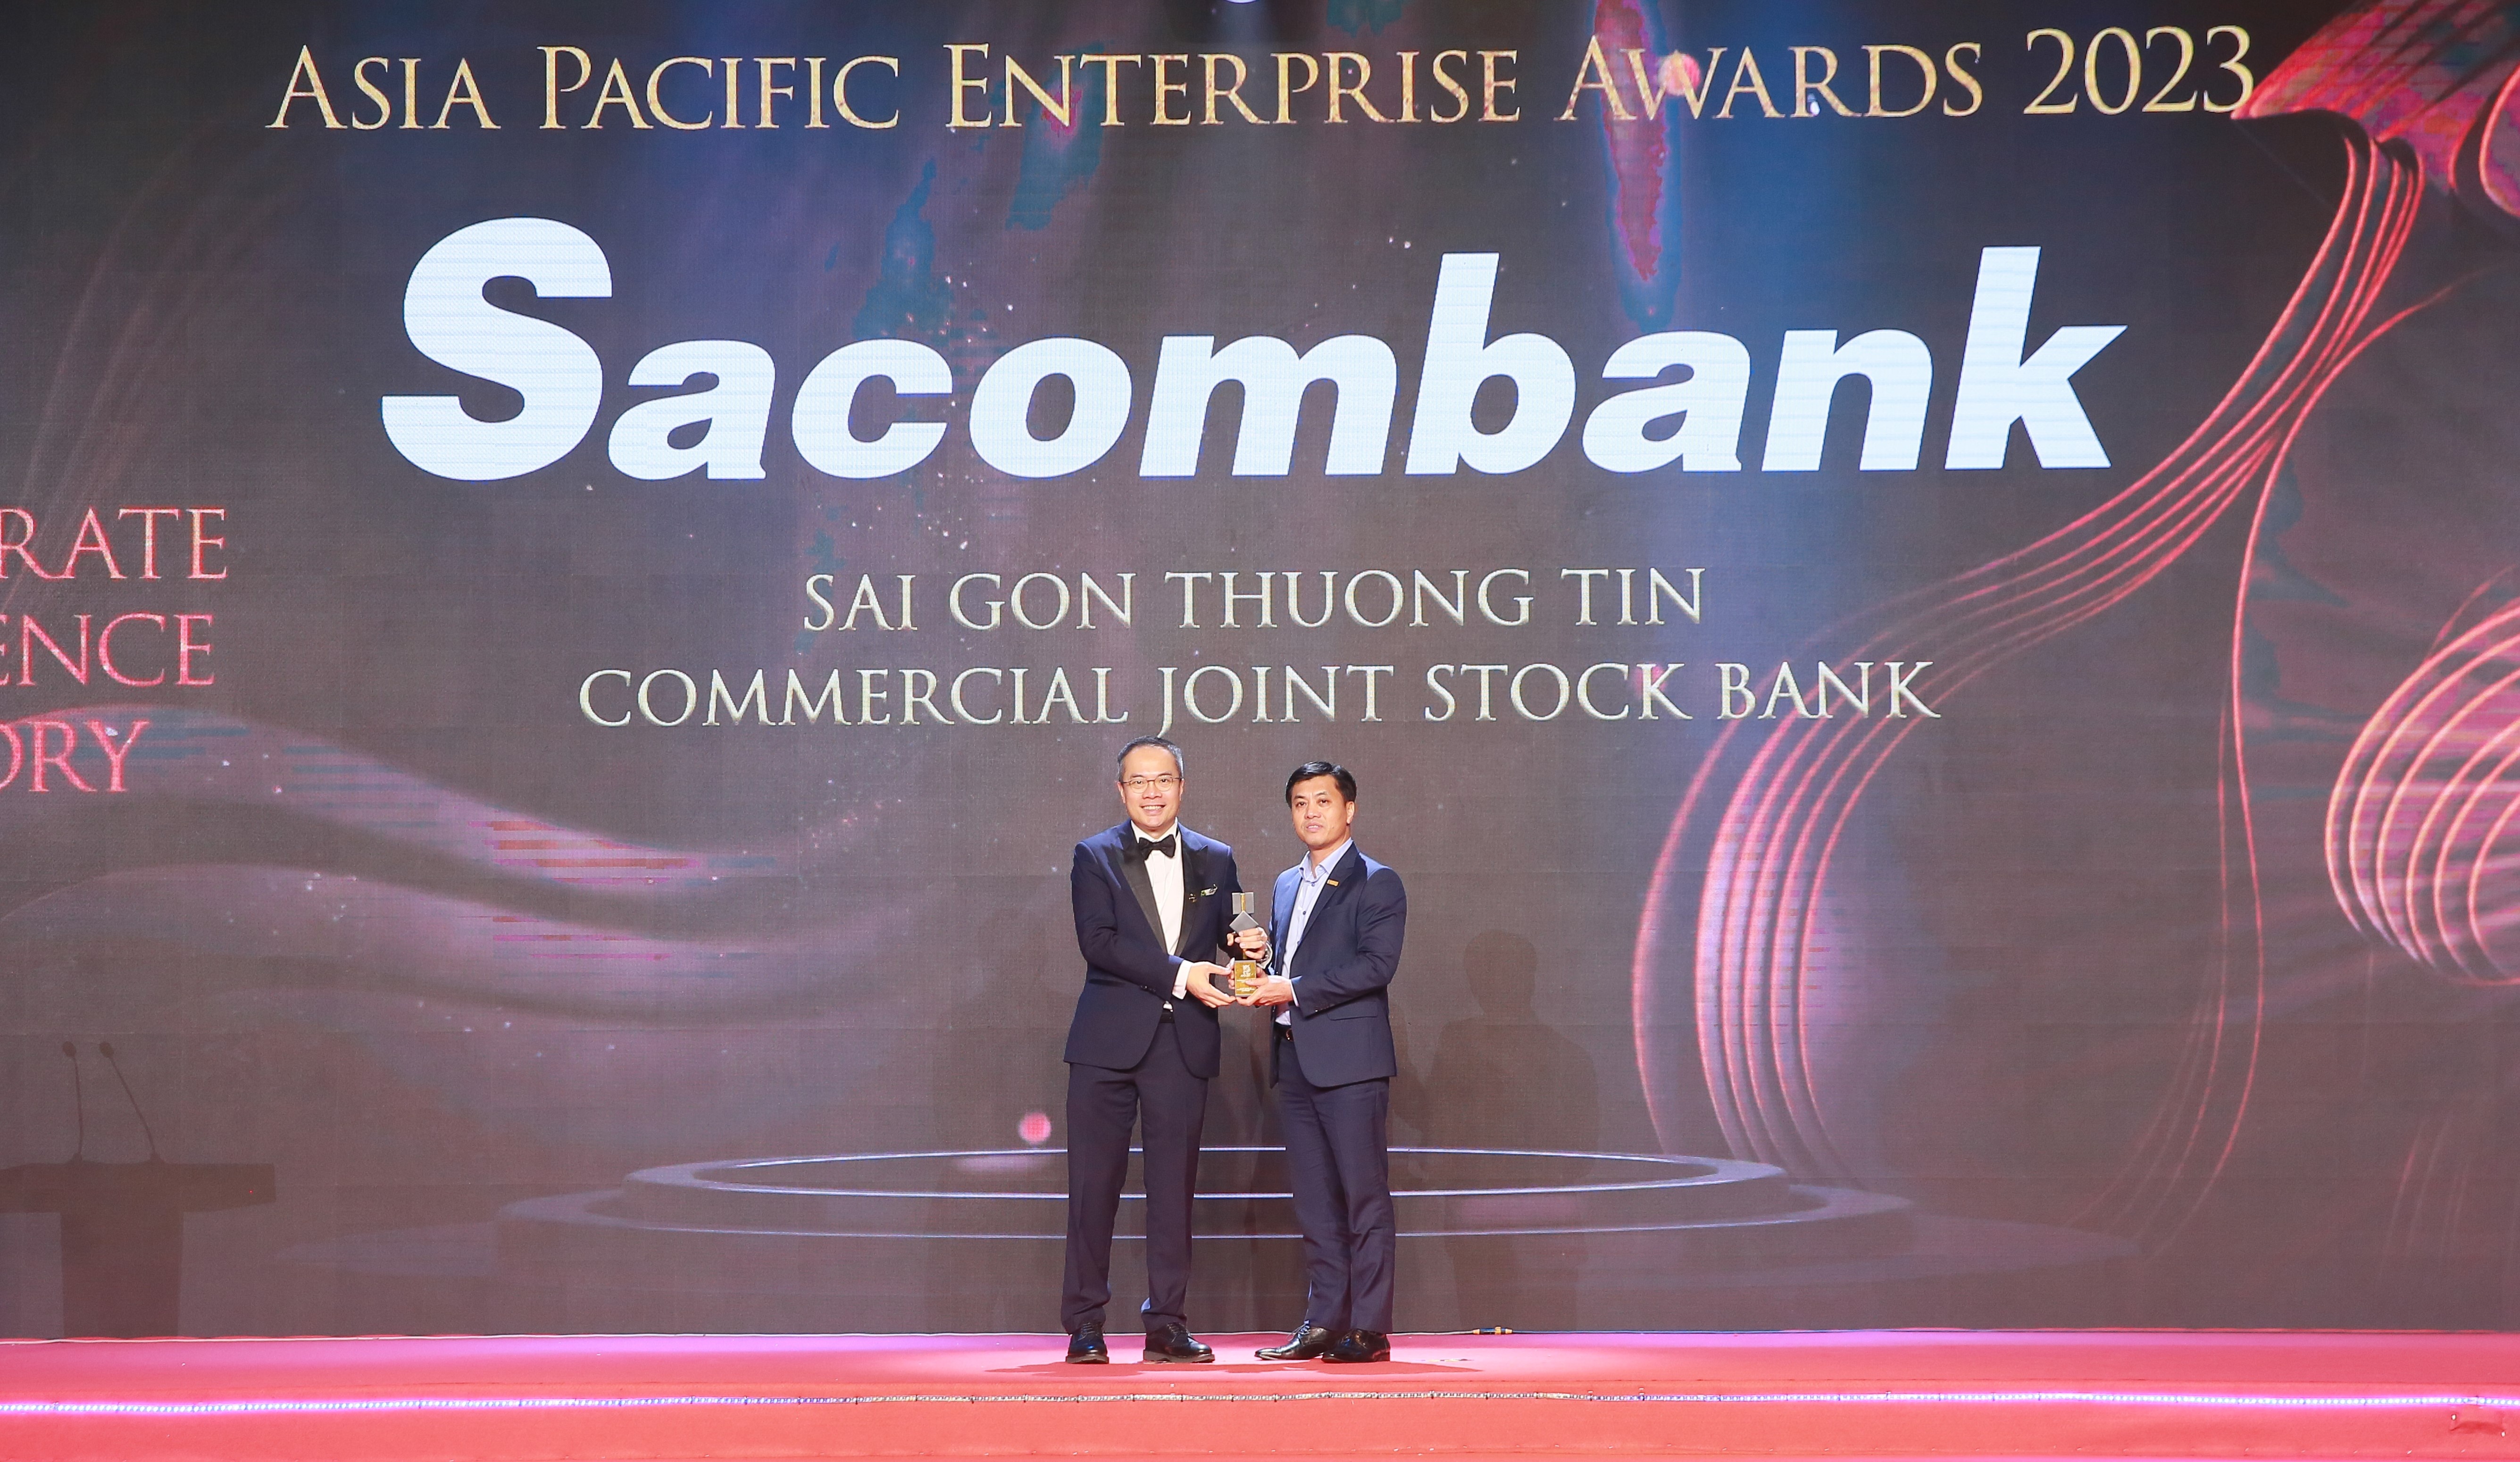 Ông Lê Đức Thịnh - Phó Tổng giám đốc Sacombank nhận giải "Doanh nghiệp xuất sắc châu Á" năm 2023